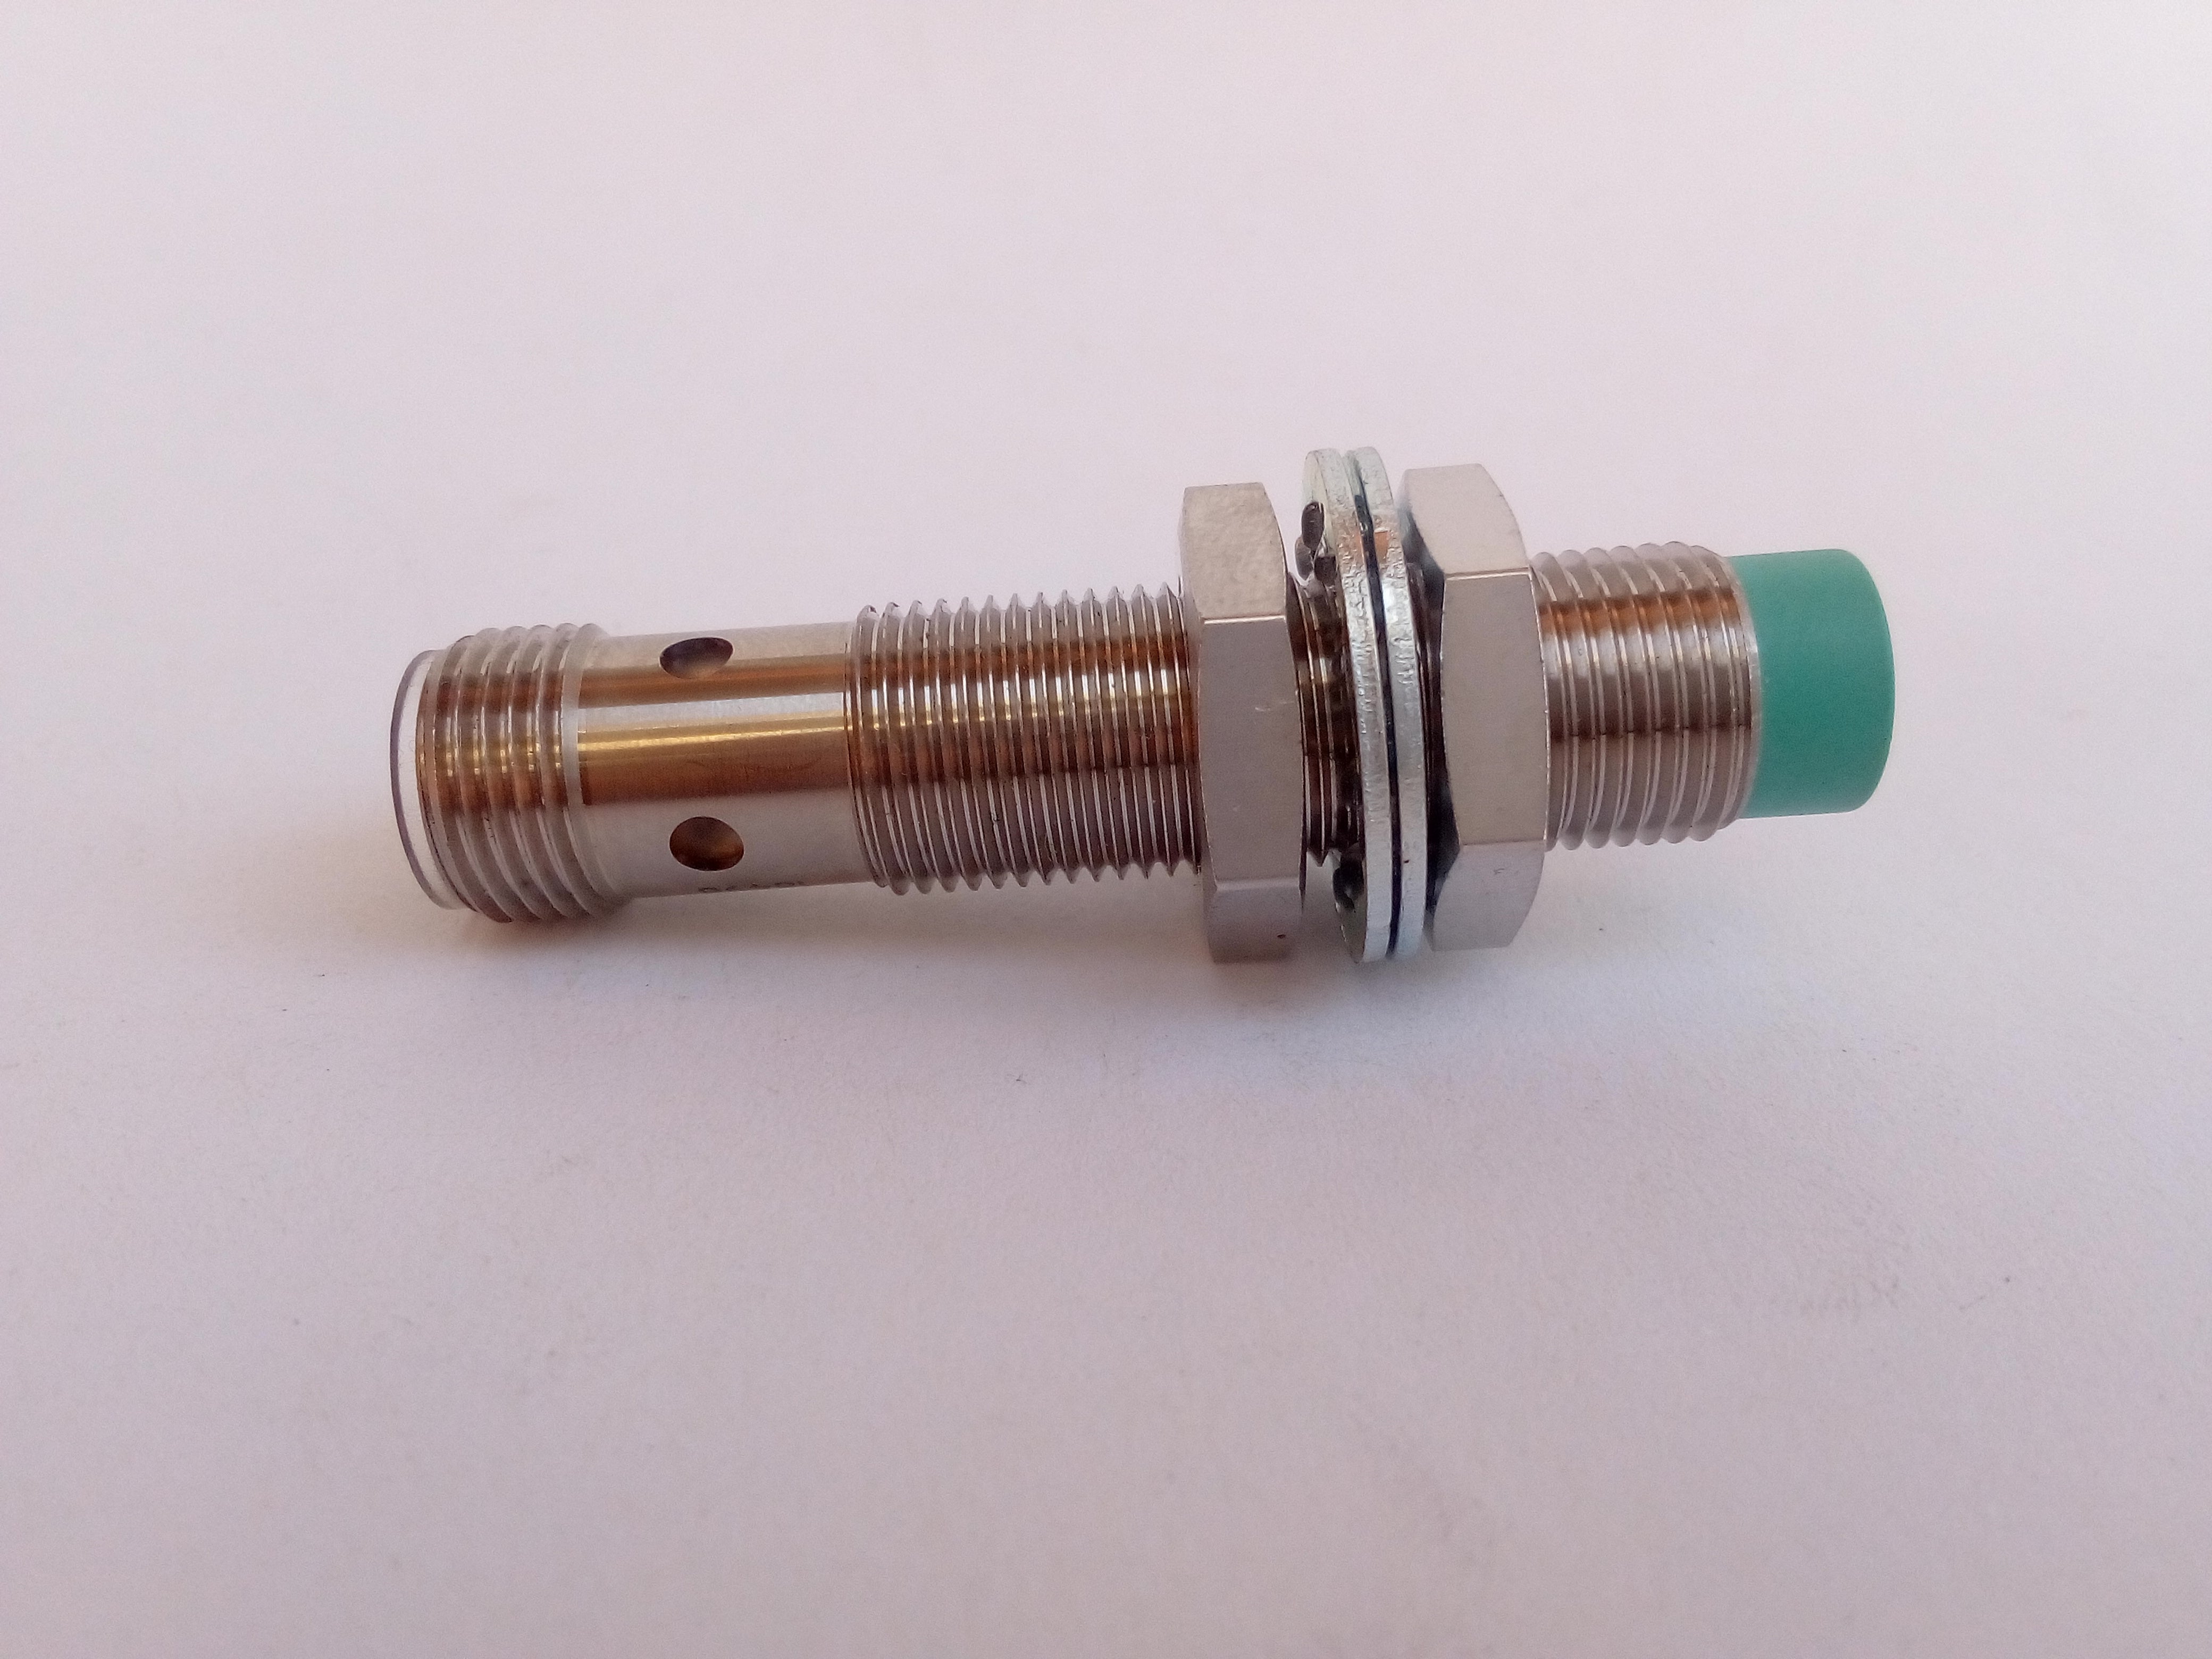 Sensor de Proximidad Pepperl+Fuchs NBN4-12GM40-Z0-V1